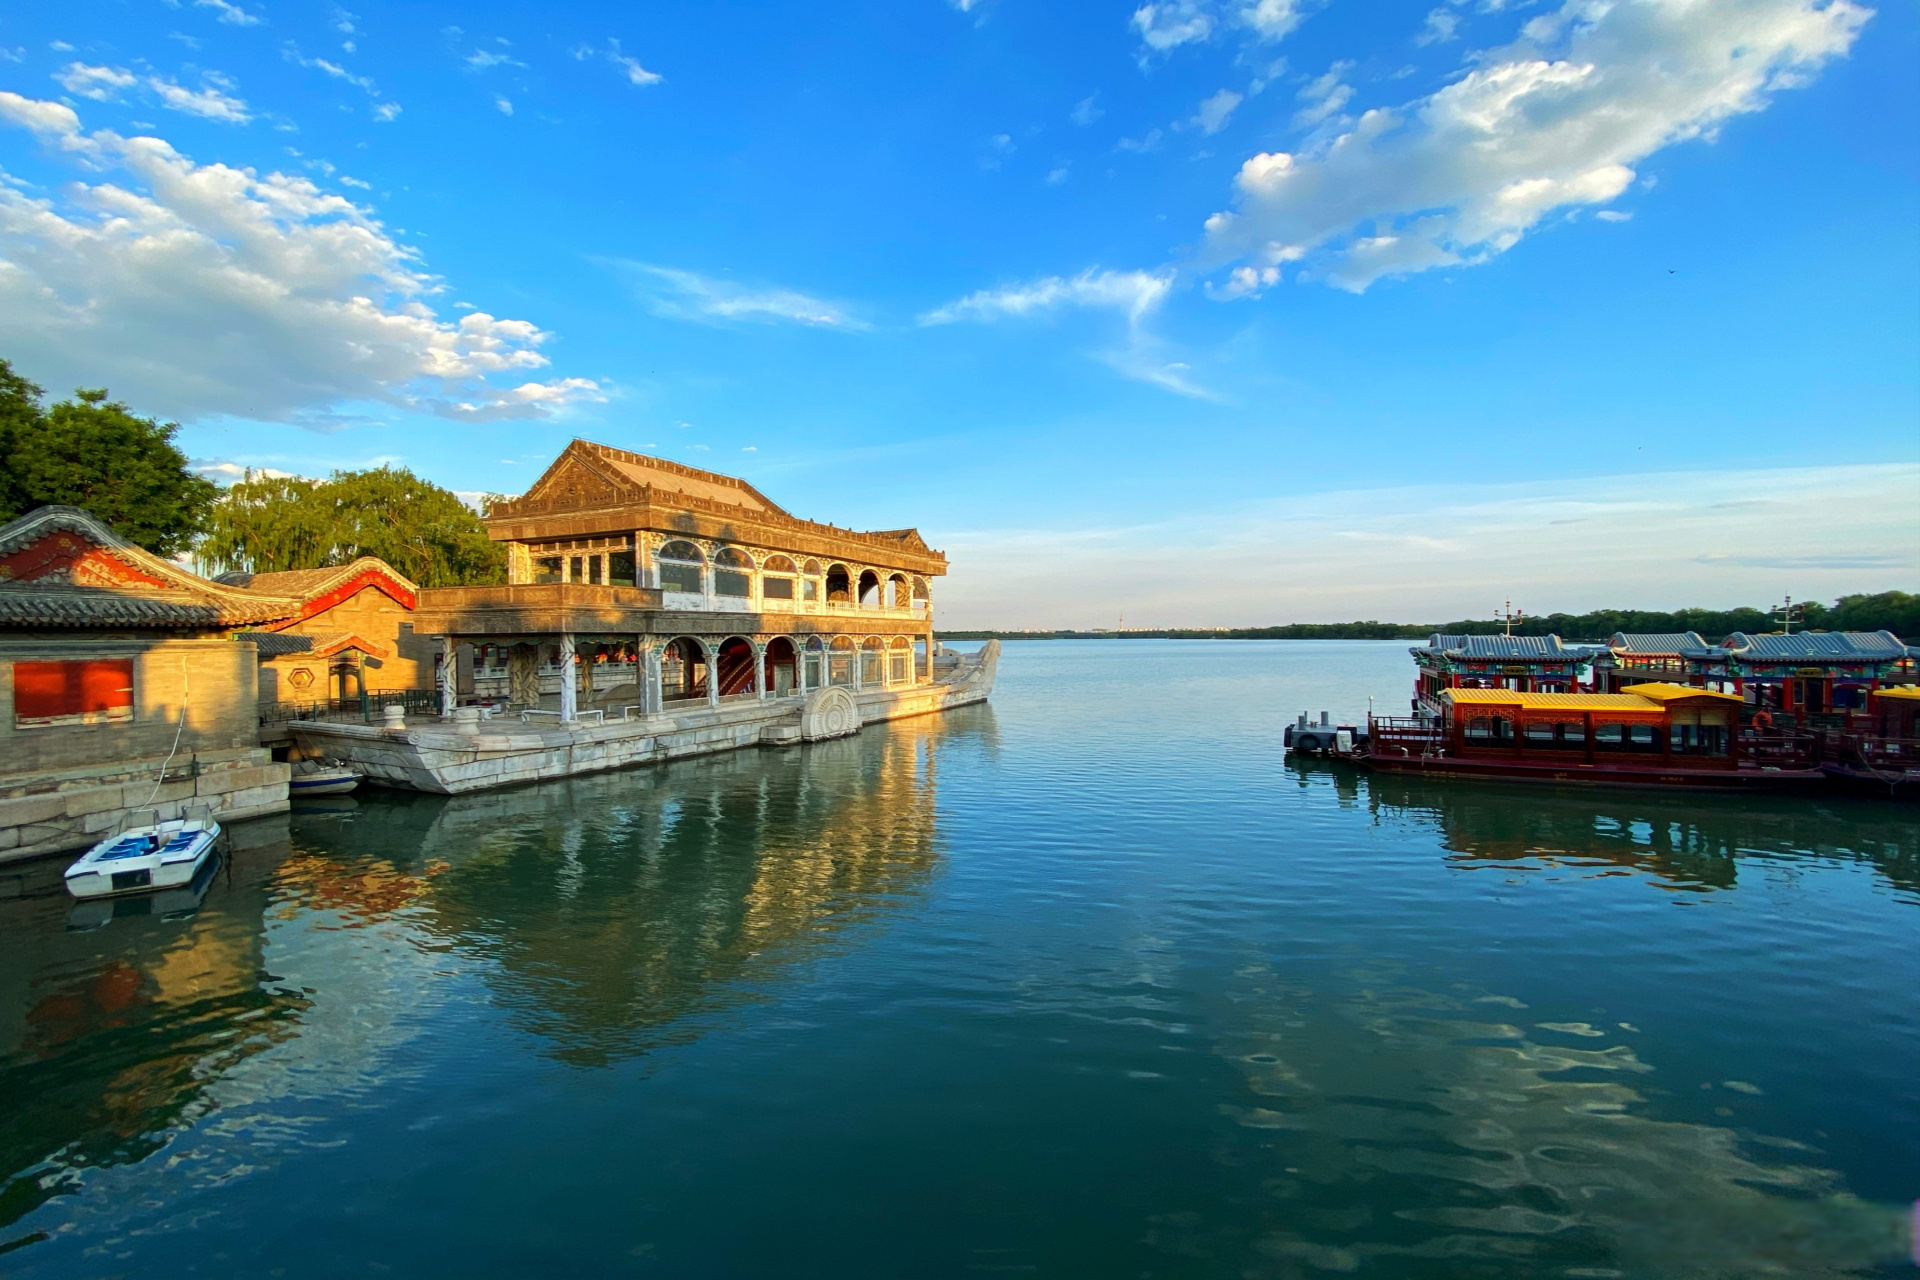 颐和园,以昆明湖,万寿山为基址,以杭州西湖为蓝本,汲取江南园林的设计